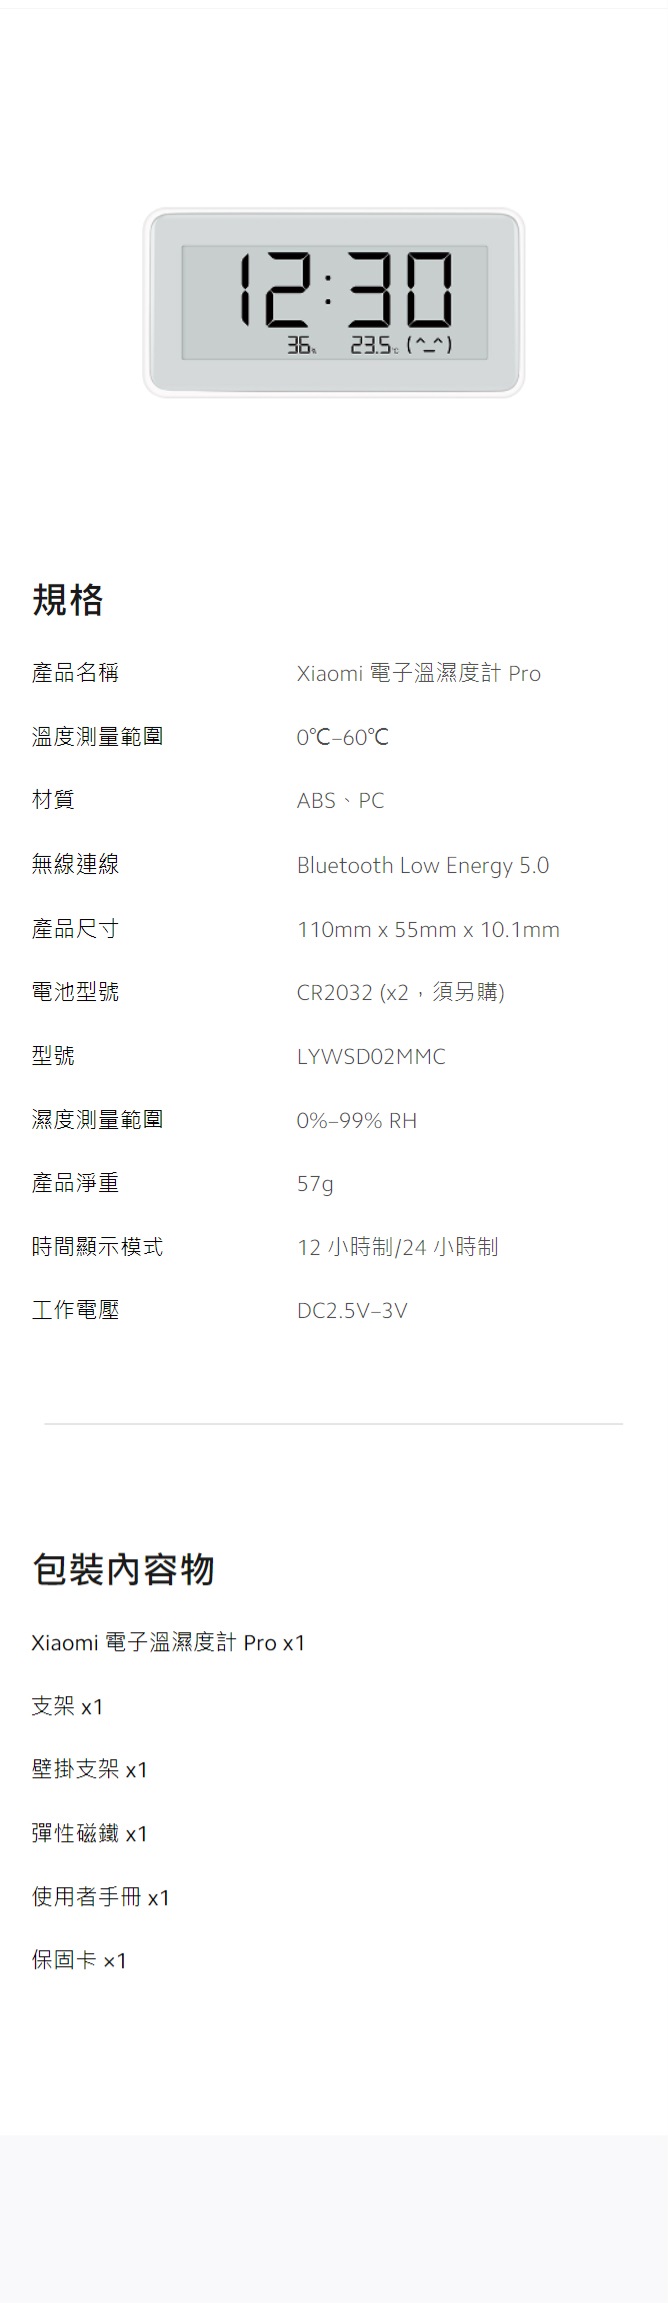 規格2:3  產品名稱溫度測量範圍材質無線連線Xiaomi 電子溫濕度計 Pro0-60ABS、PCBluetooth Low Energy 5.0110mm x 55mm x 10.1mm產品尺寸電池型號CR2032 (x2,須另購)型號LYWSDO2MMC濕度測量範圍0%-99% RH產品淨重57g時間顯示模式12 小時制/24小時制工作電壓DC2.5V-3V包裝內容物Xiaomi 電子溫濕度計 Pro x1支架 x1壁掛支架 x1彈性磁鐵 x1使用者手冊x1保固卡 x1